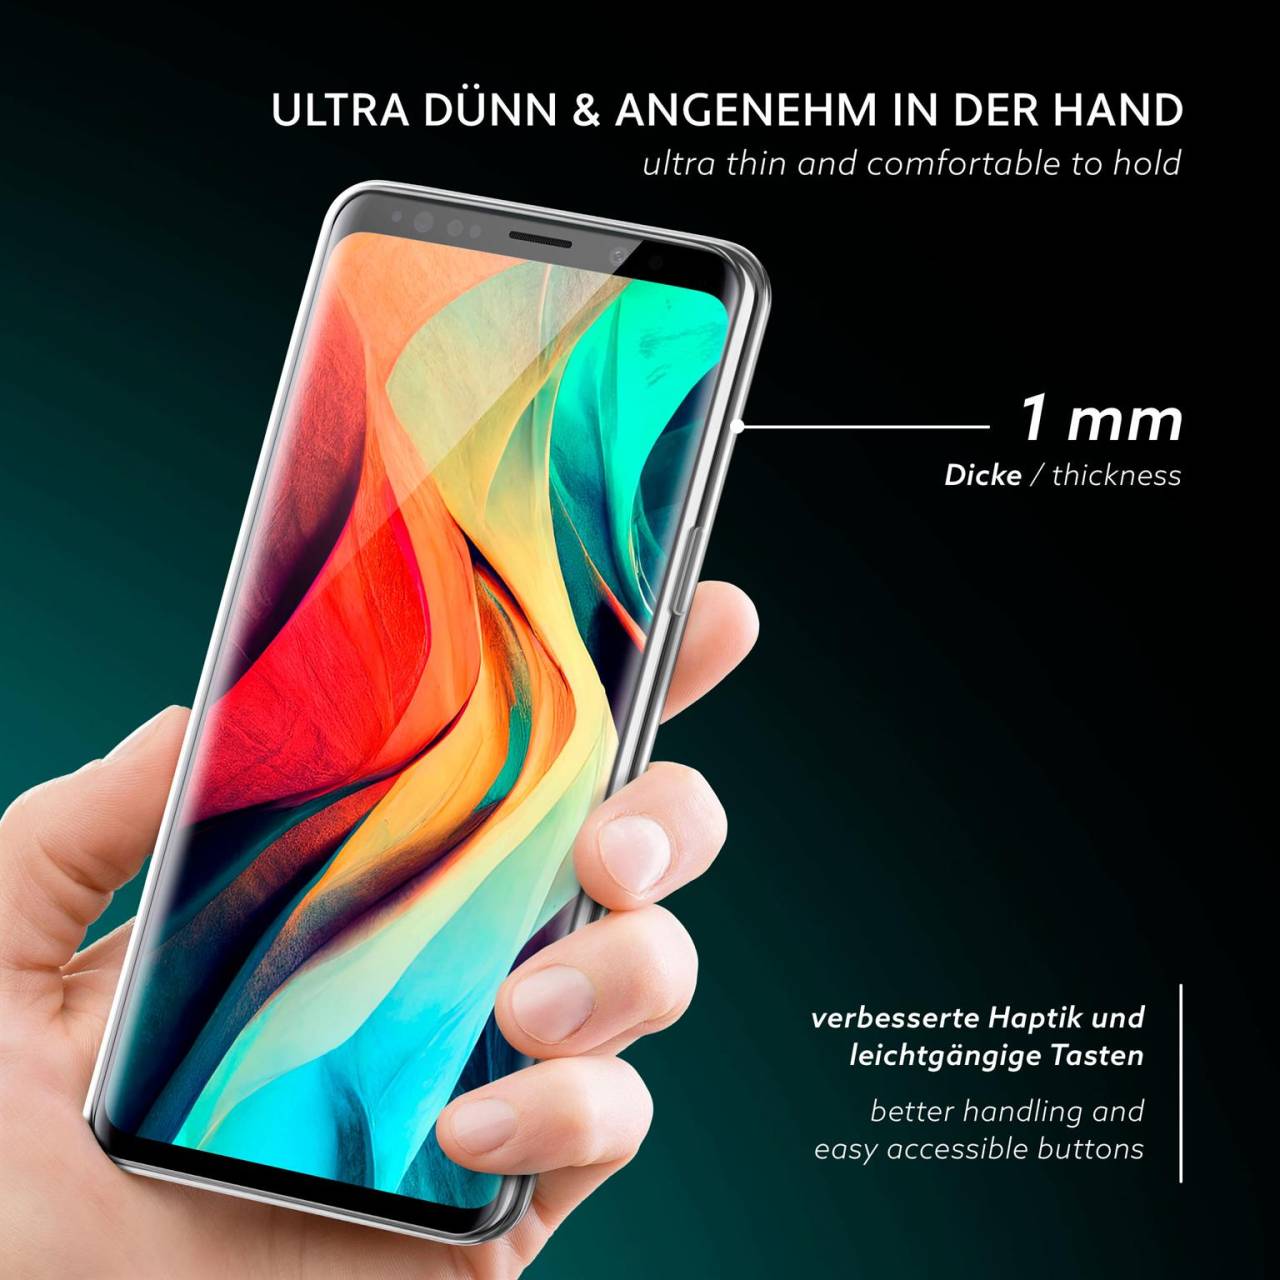 moex Aero Case für Samsung Galaxy S9 – Durchsichtige Hülle aus Silikon, Ultra Slim Handyhülle